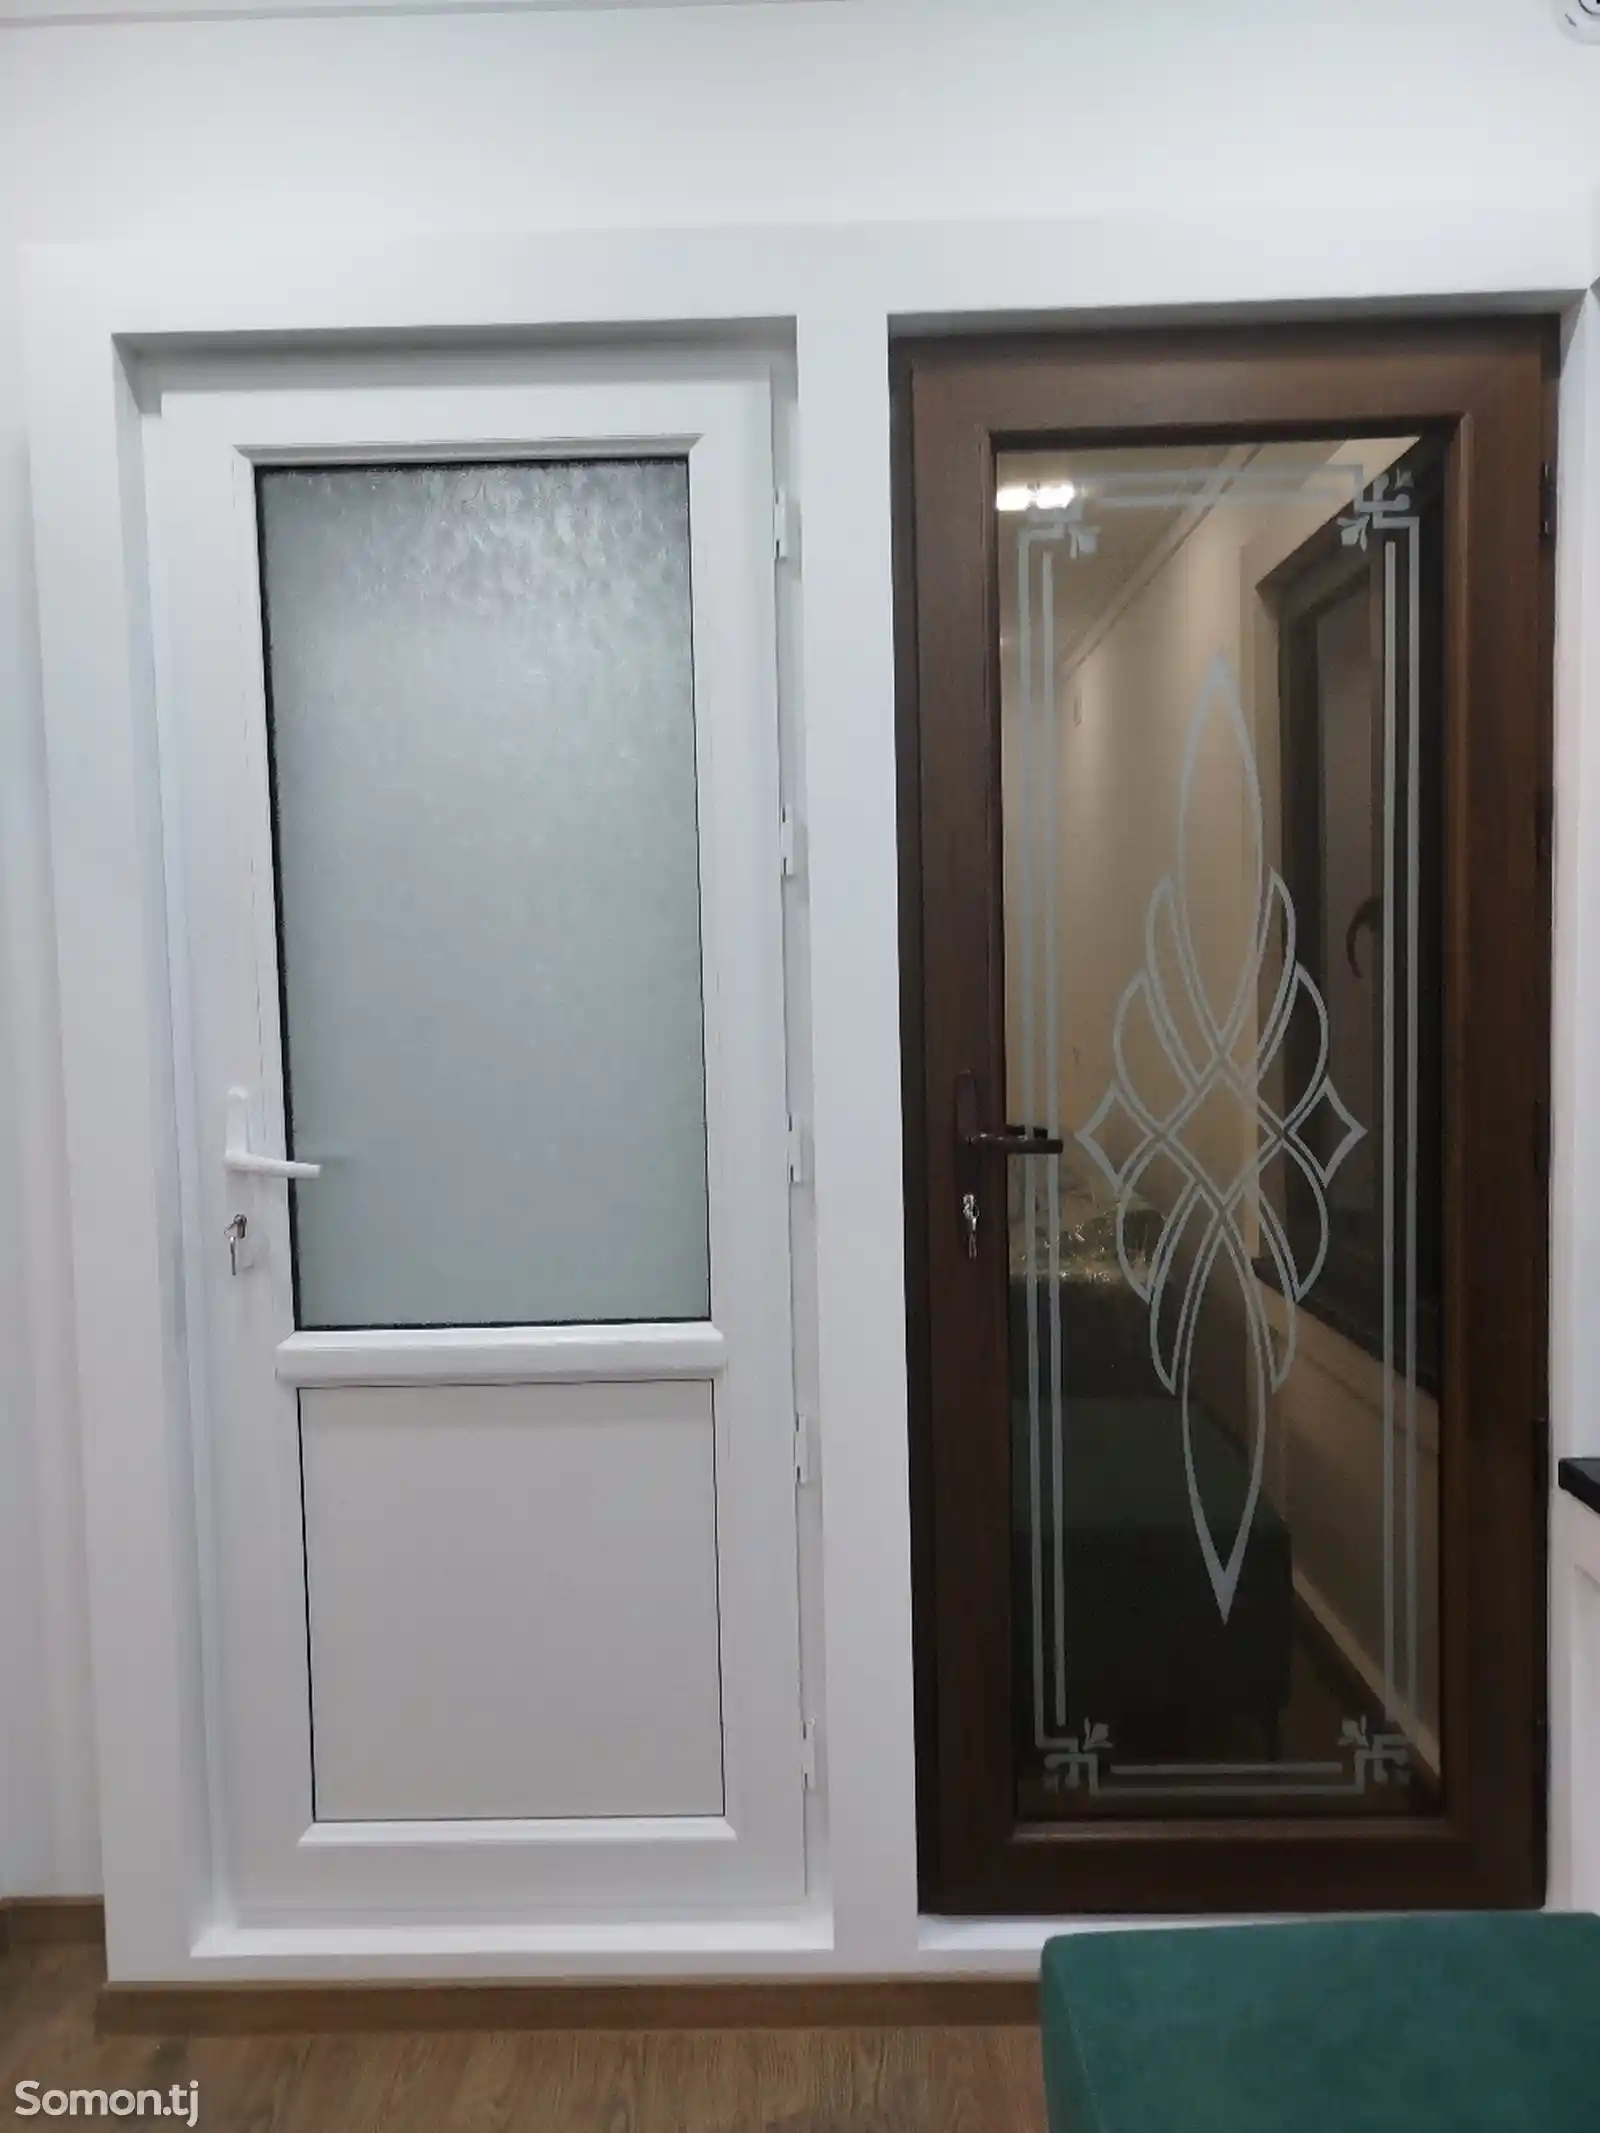 Окна и двери из алюминия и пластика на заказ-2